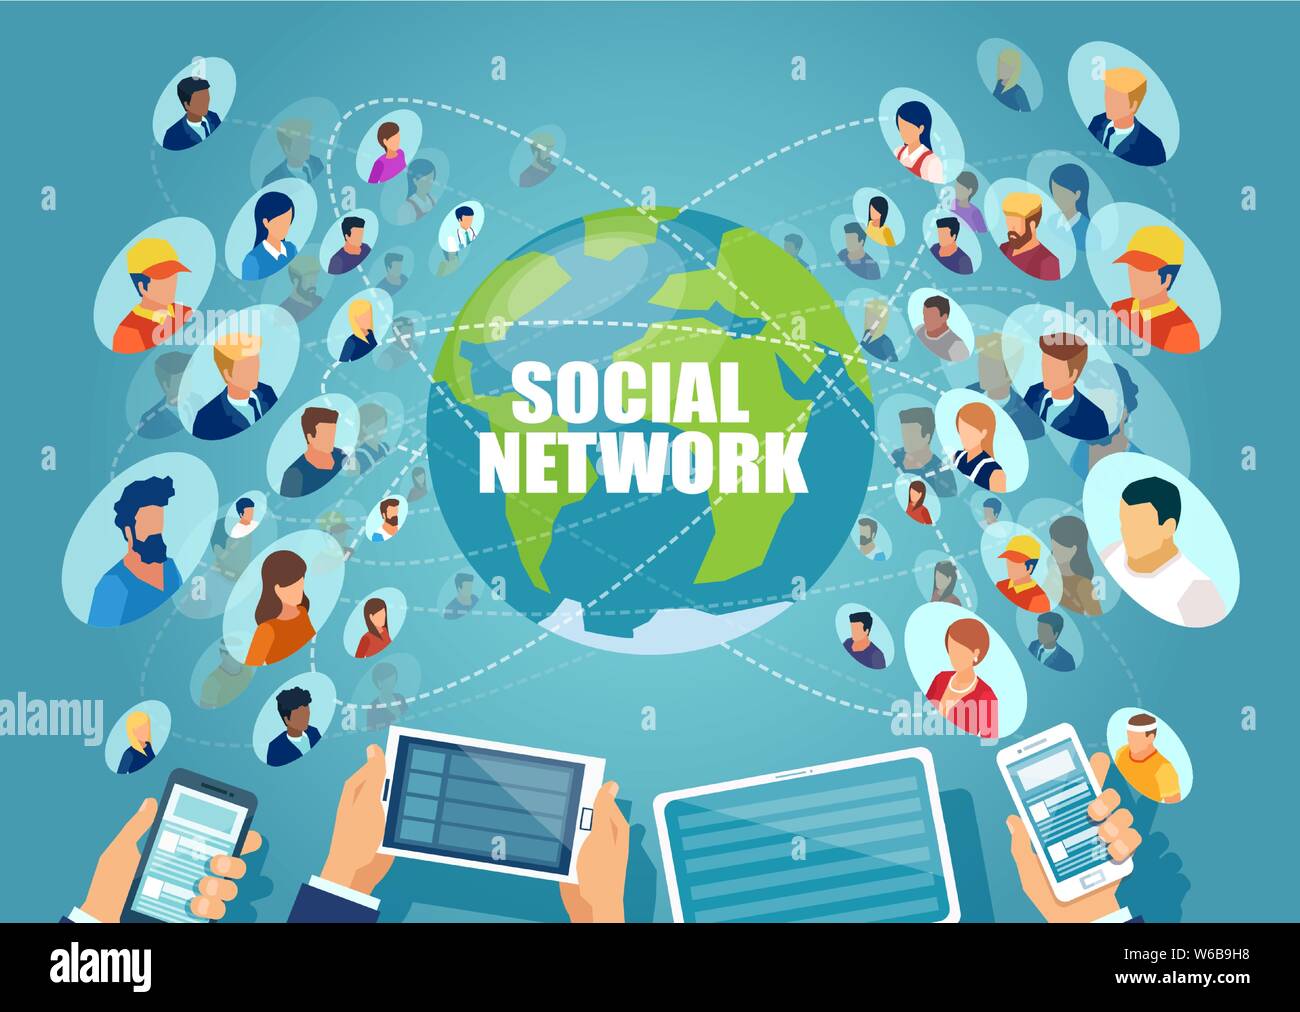 Concept de réseau social. Vecteur de diverses personnes connectées en ligne via la technologie moderne Illustration de Vecteur